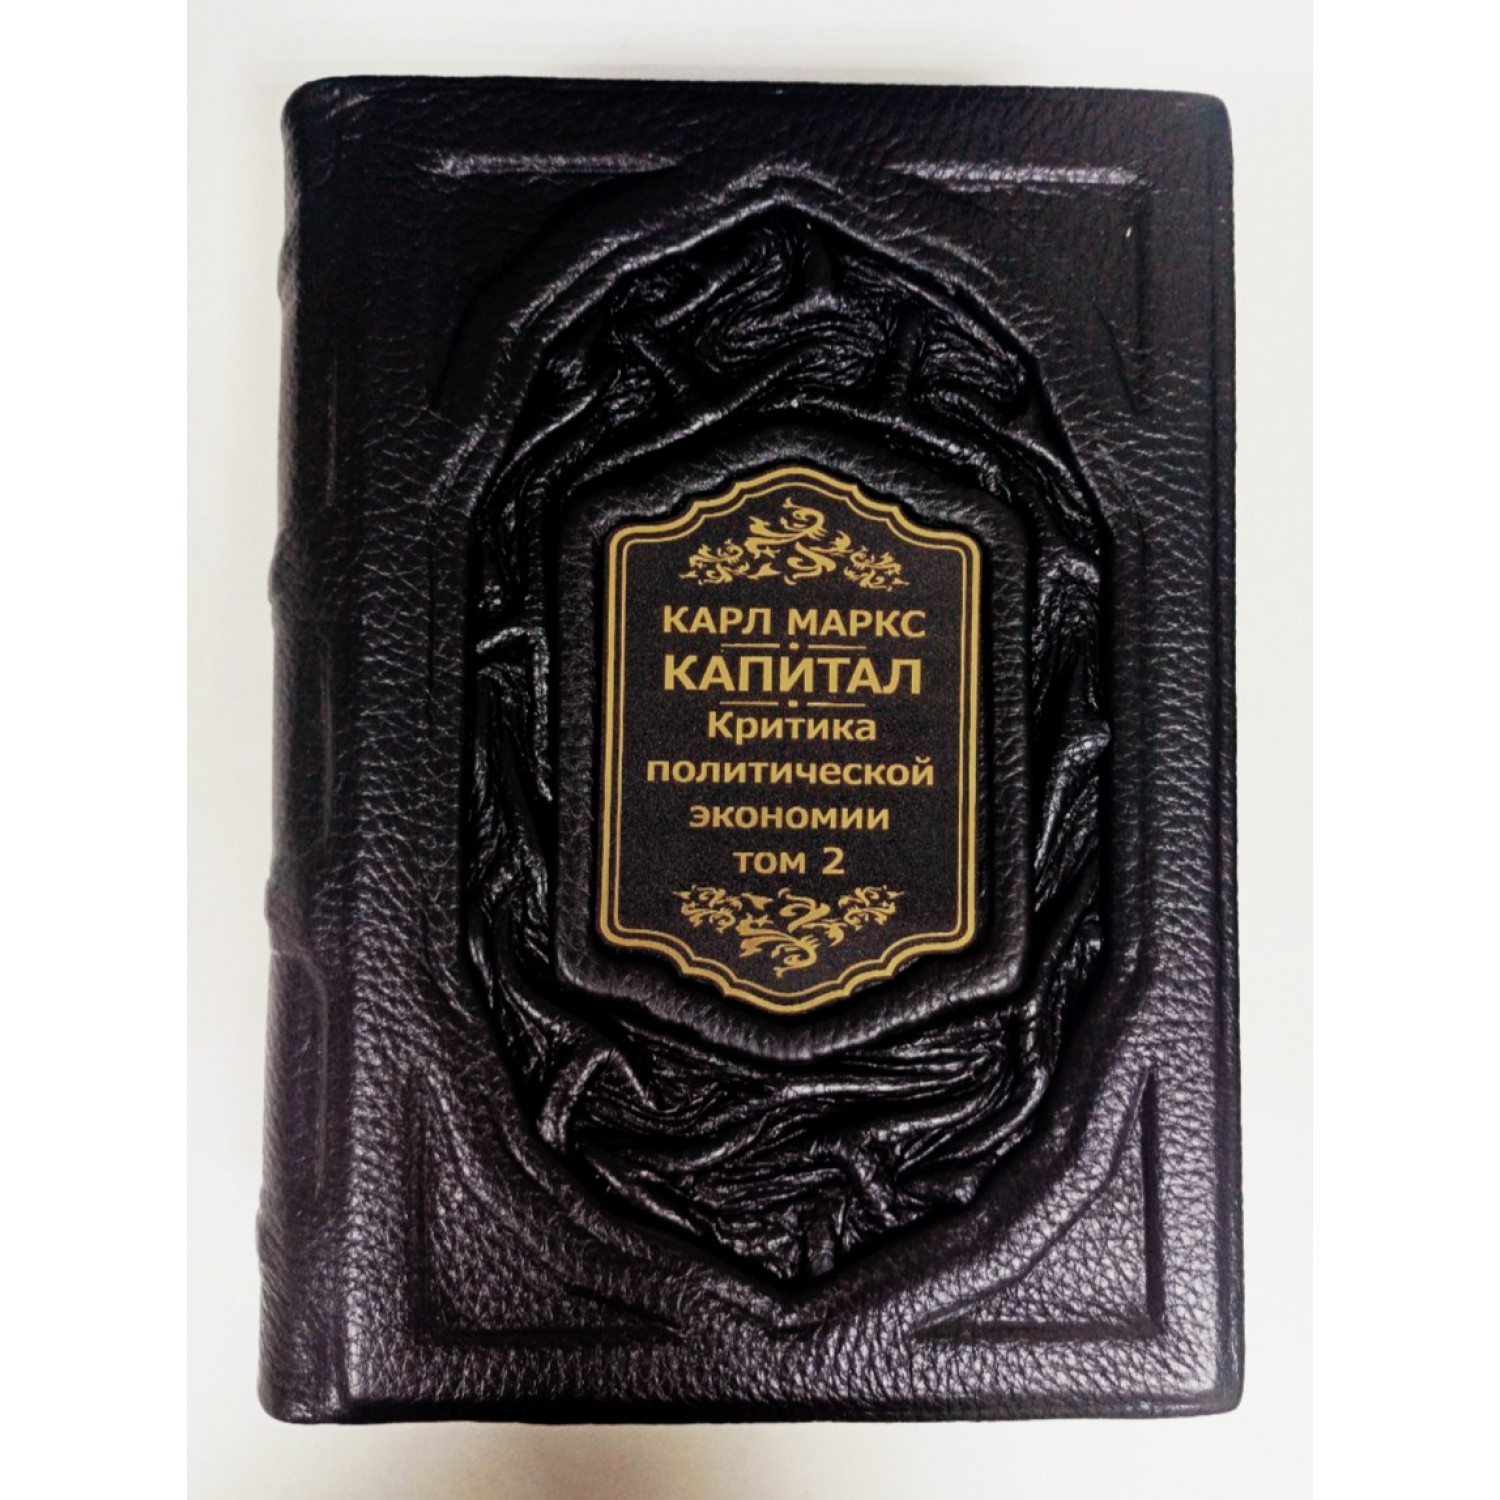 Карл Маркс "Капитал" (в трех томах). Подарочное издание в кожаном переплете